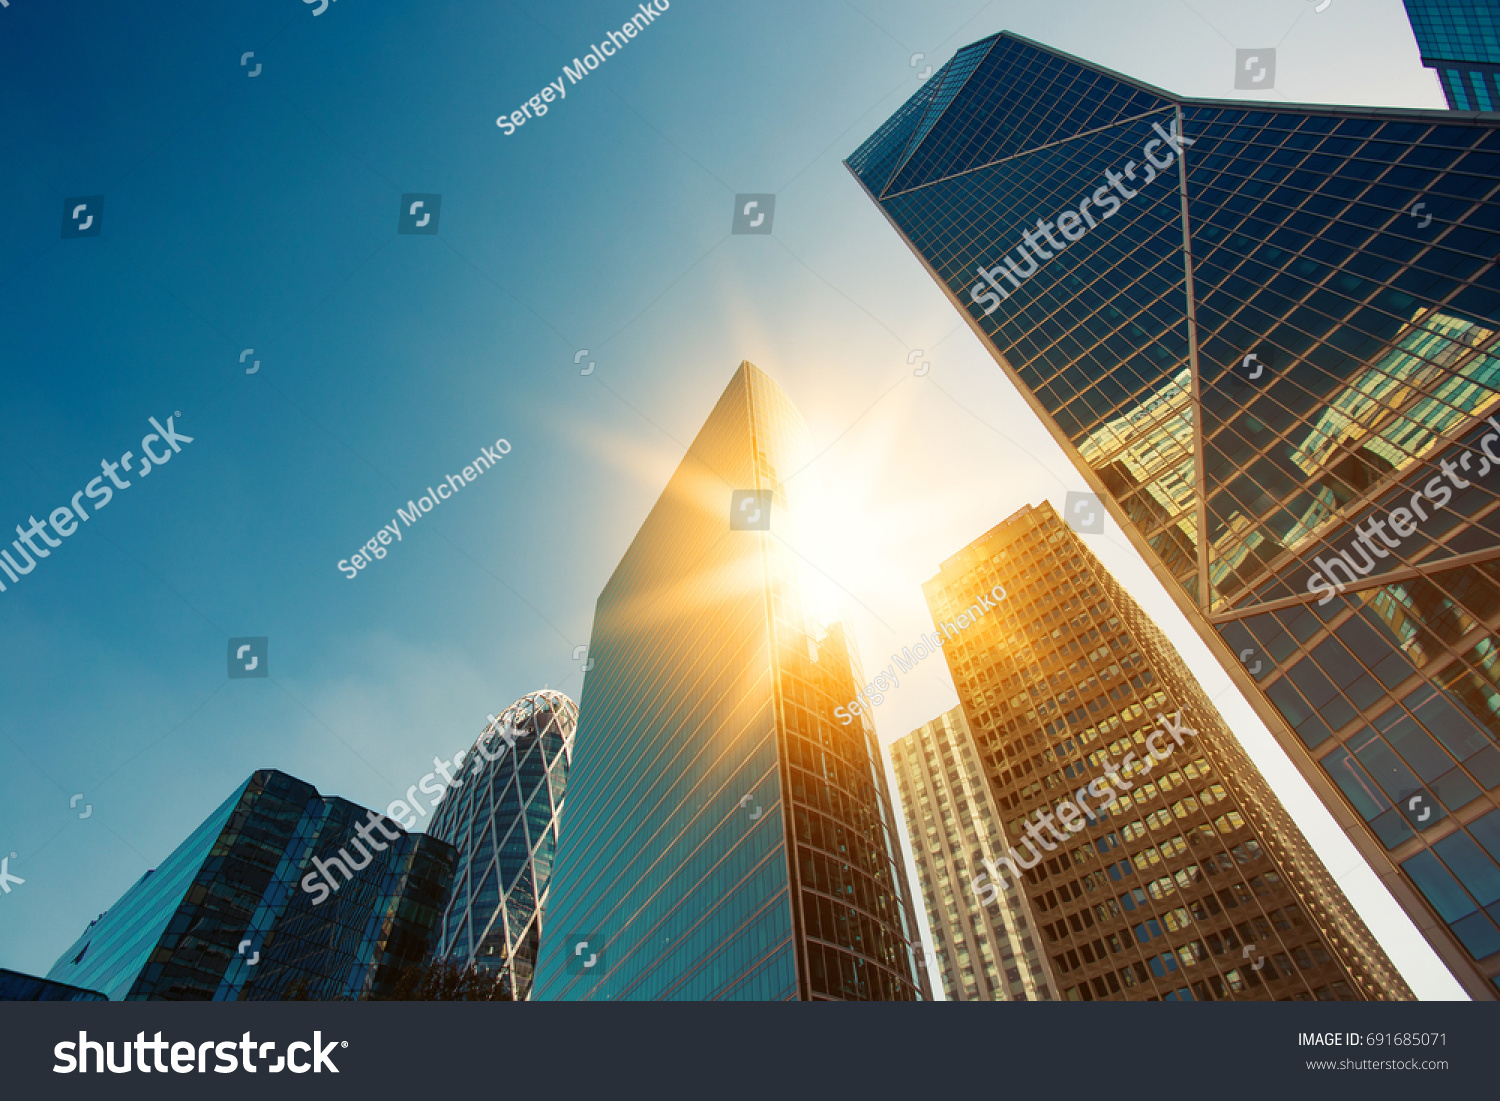 Mrakodrap skleněné fasády za jasného slunečného dne se slunečními paprsky na modré obloze. Moderní budovy v Paříži obchodní čtvrti La Defense. Ekonomika, finance, koncepce podnikání. Pohled zdola nahoru #691685071